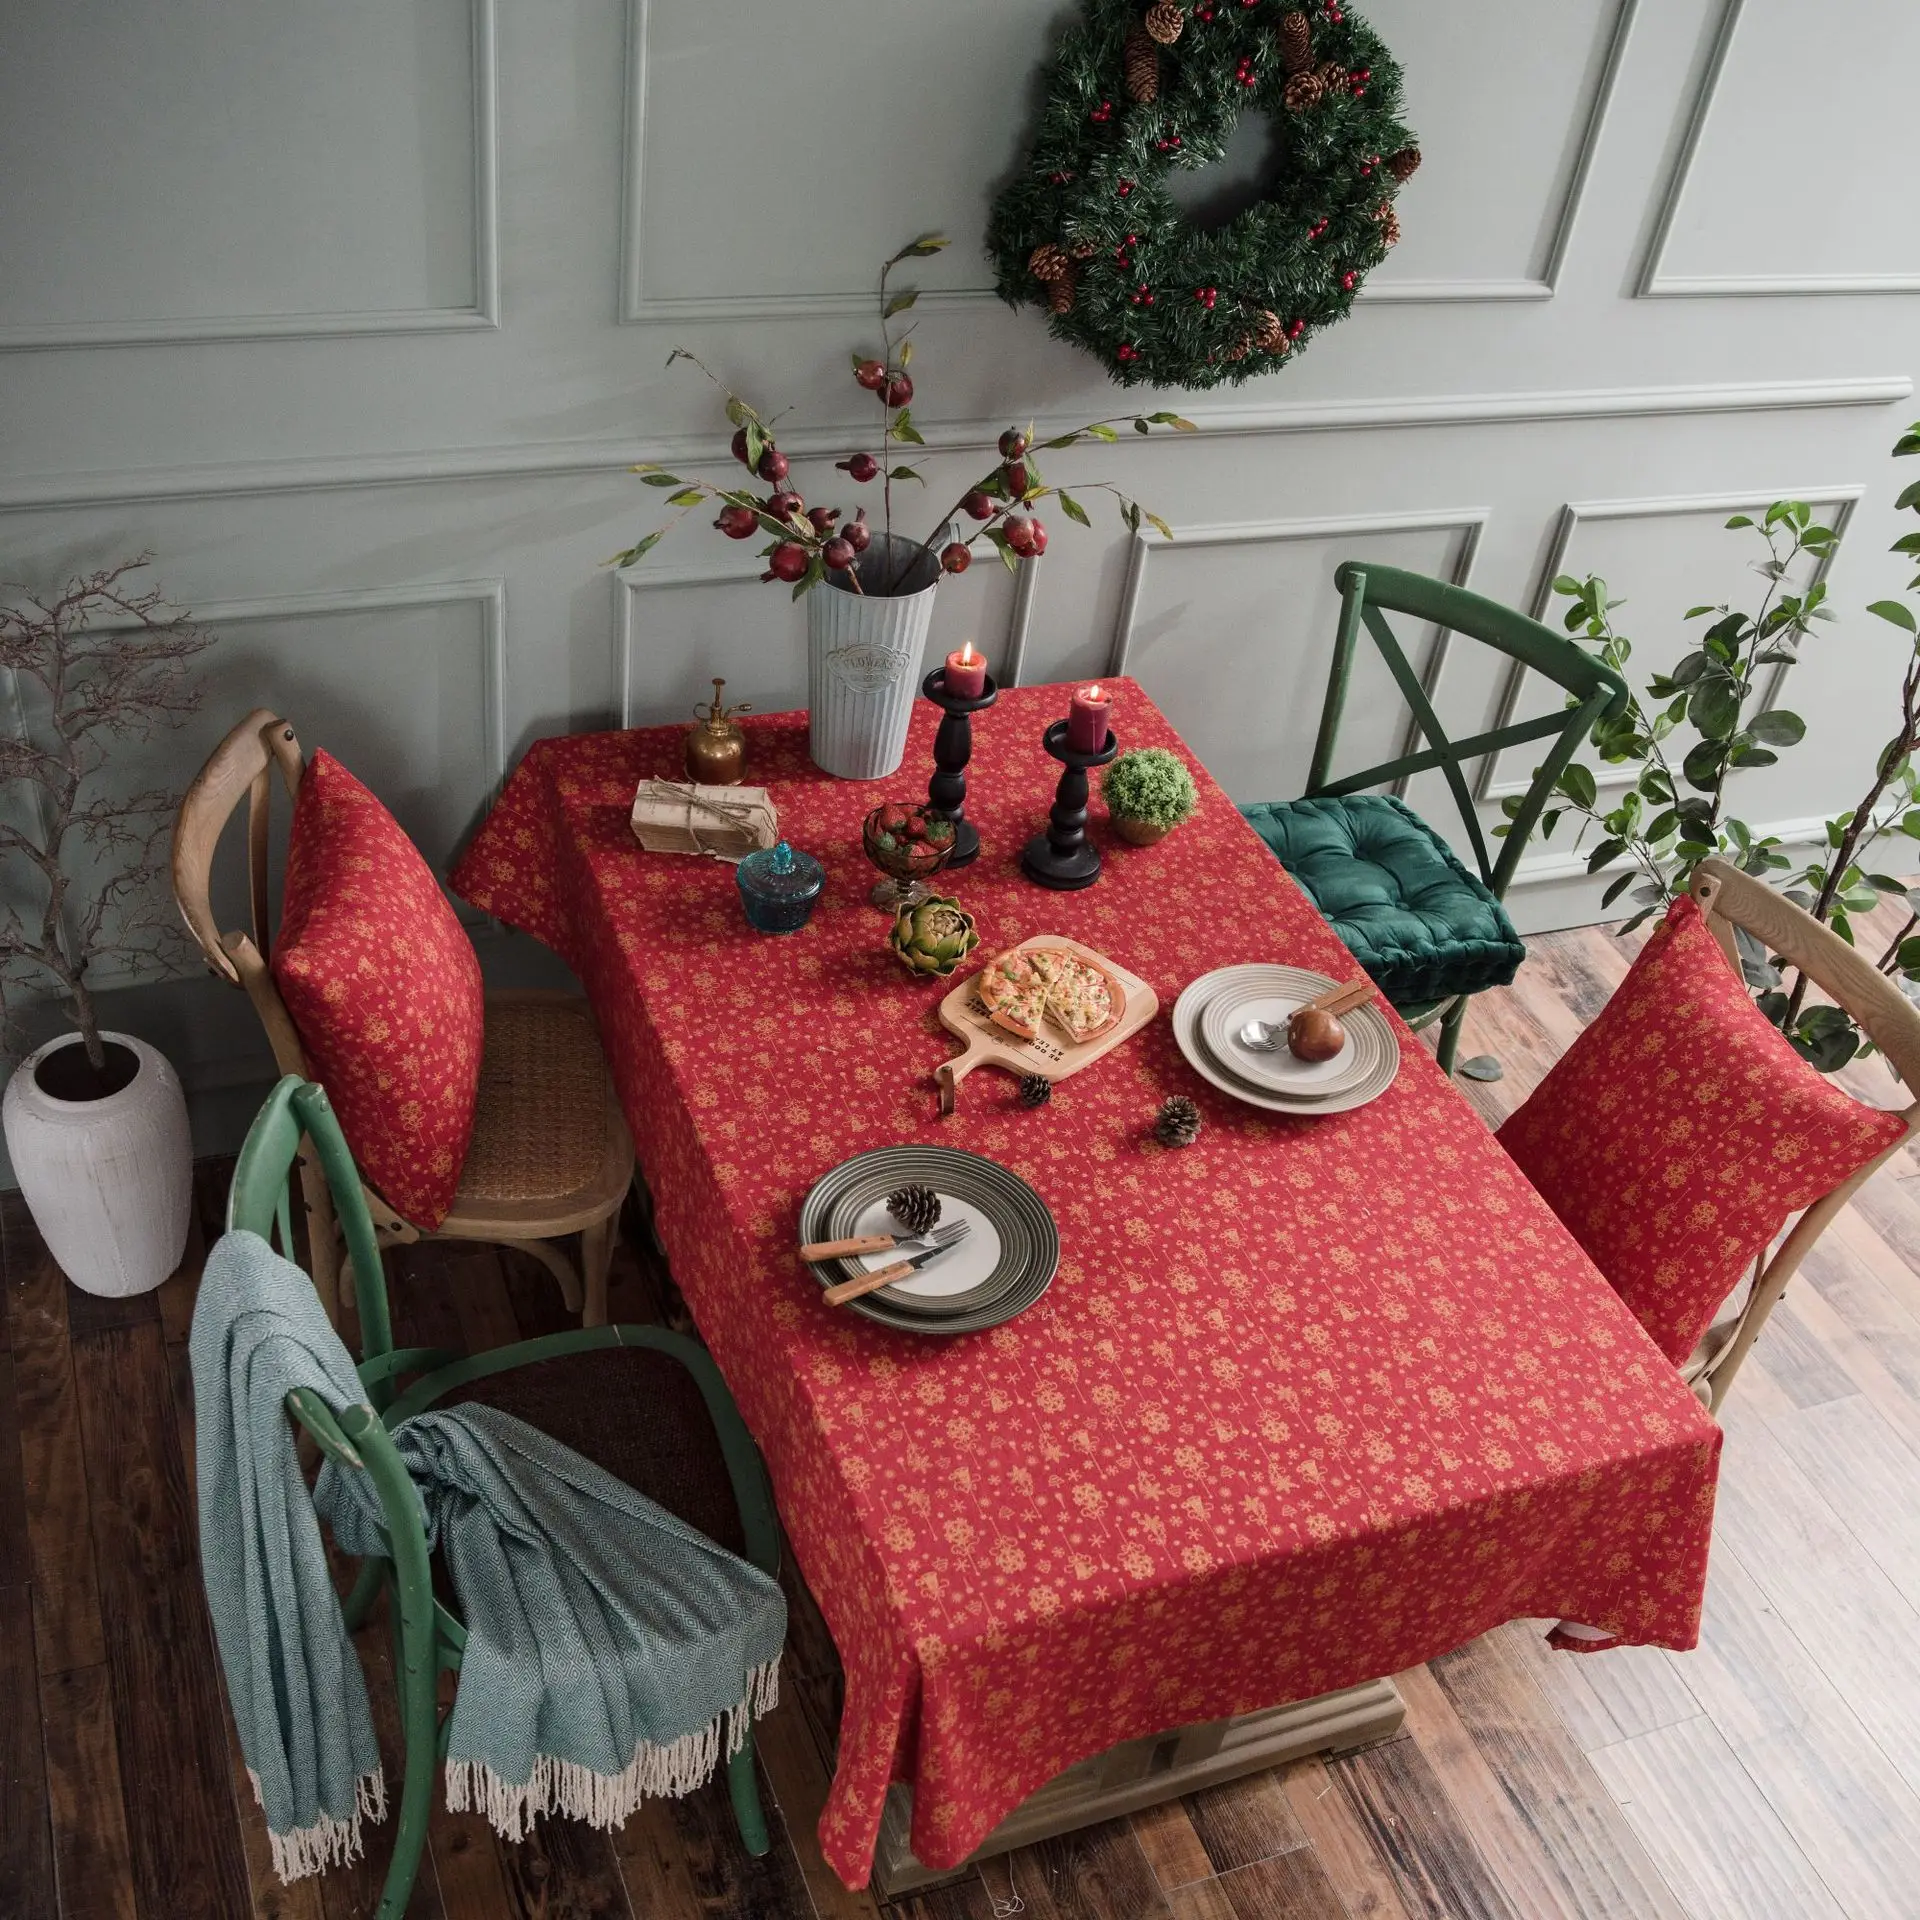 

Скатерть для стола, Рождественская красная прямоугольная, из хлопка и льна, праздничная, свадебное украшение скатерти